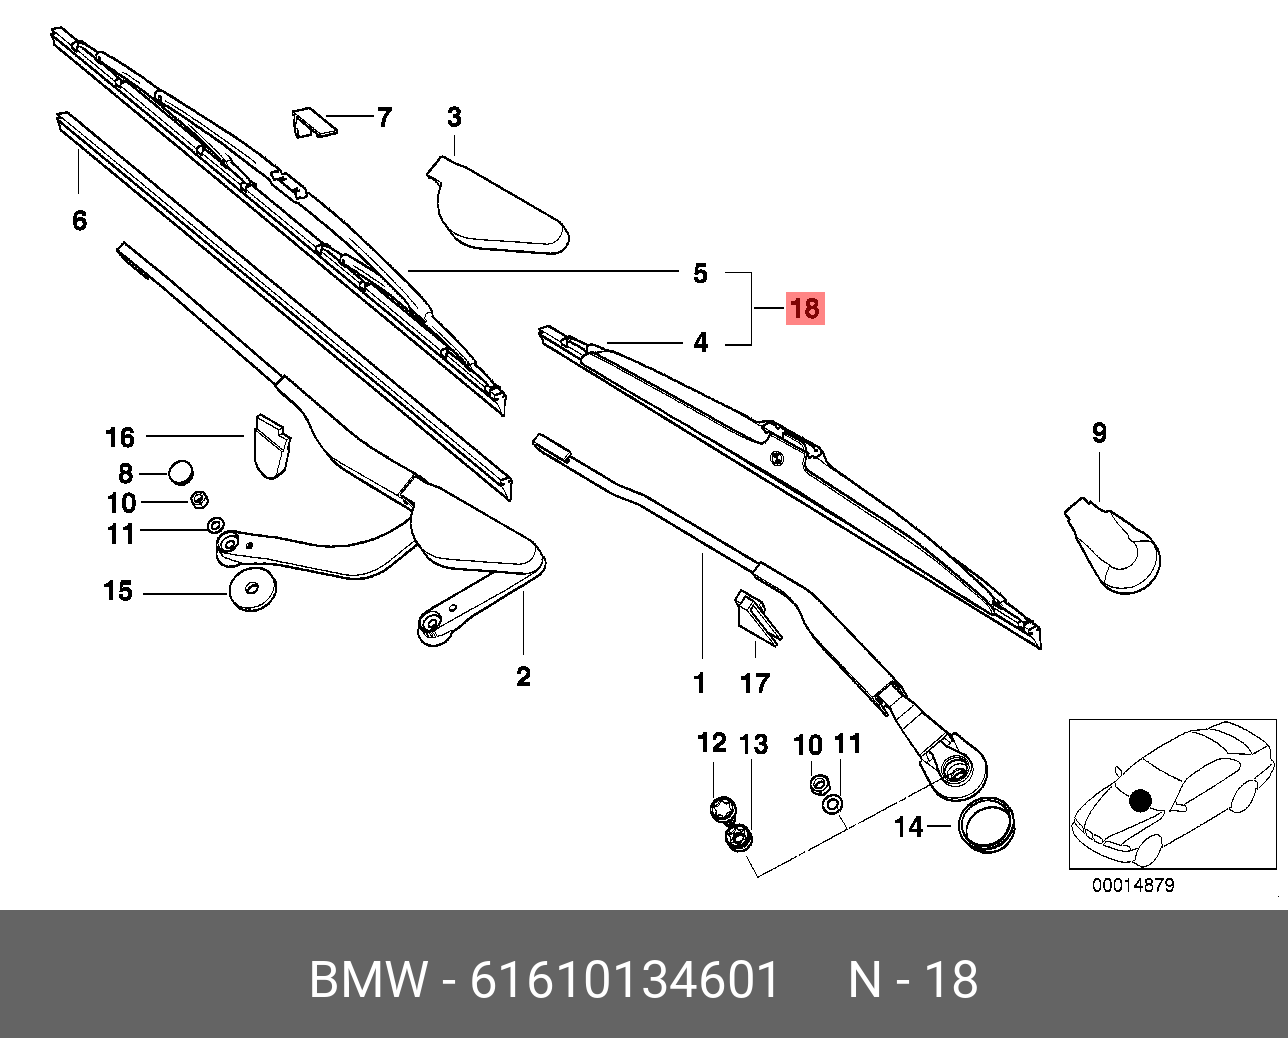 Щётки стеклоочистителя, комплект, передние   BMW арт. 61610134601